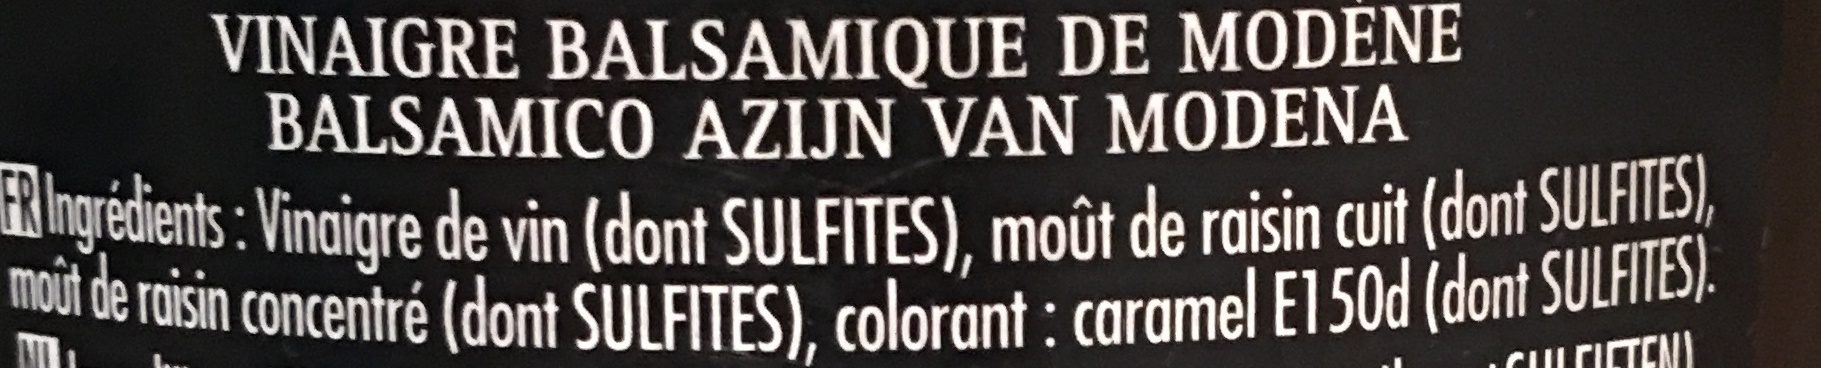 Maille Vinaigre Balsamique de Modène 75 cl - Ingredientes - fr